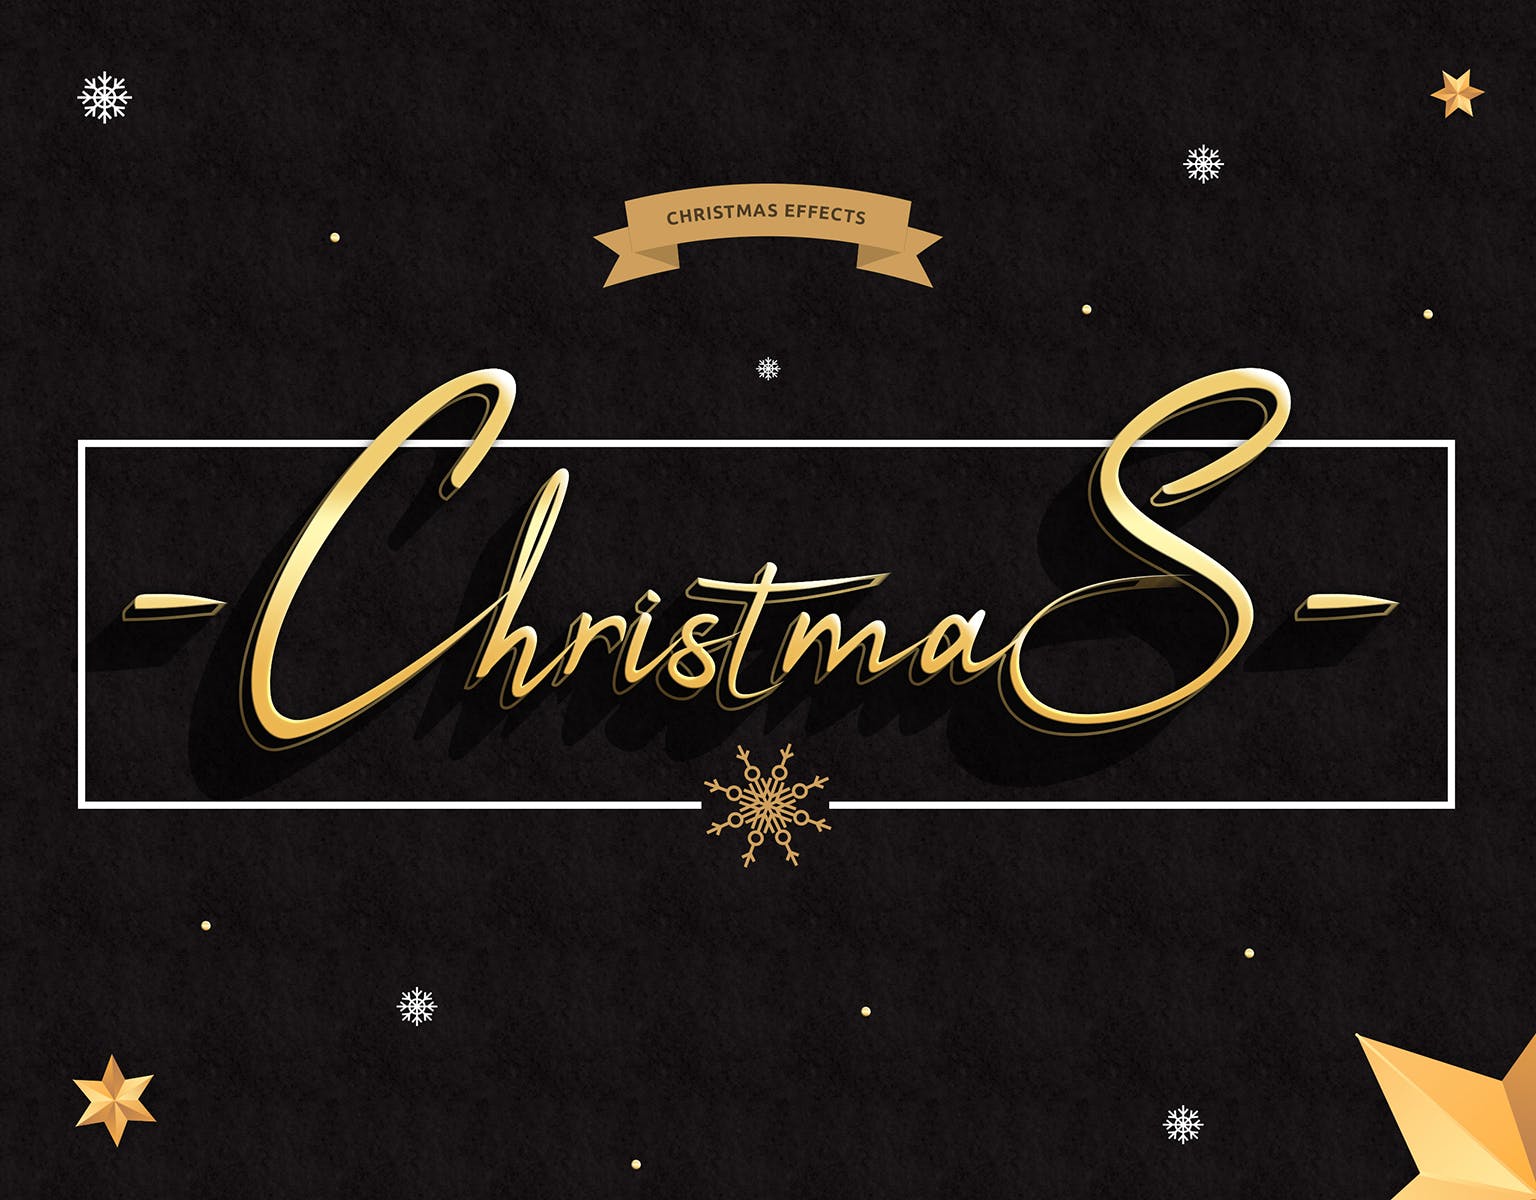 圣诞节主题海报文字样式PSD分层模板 Christmas Text Effects插图(1)